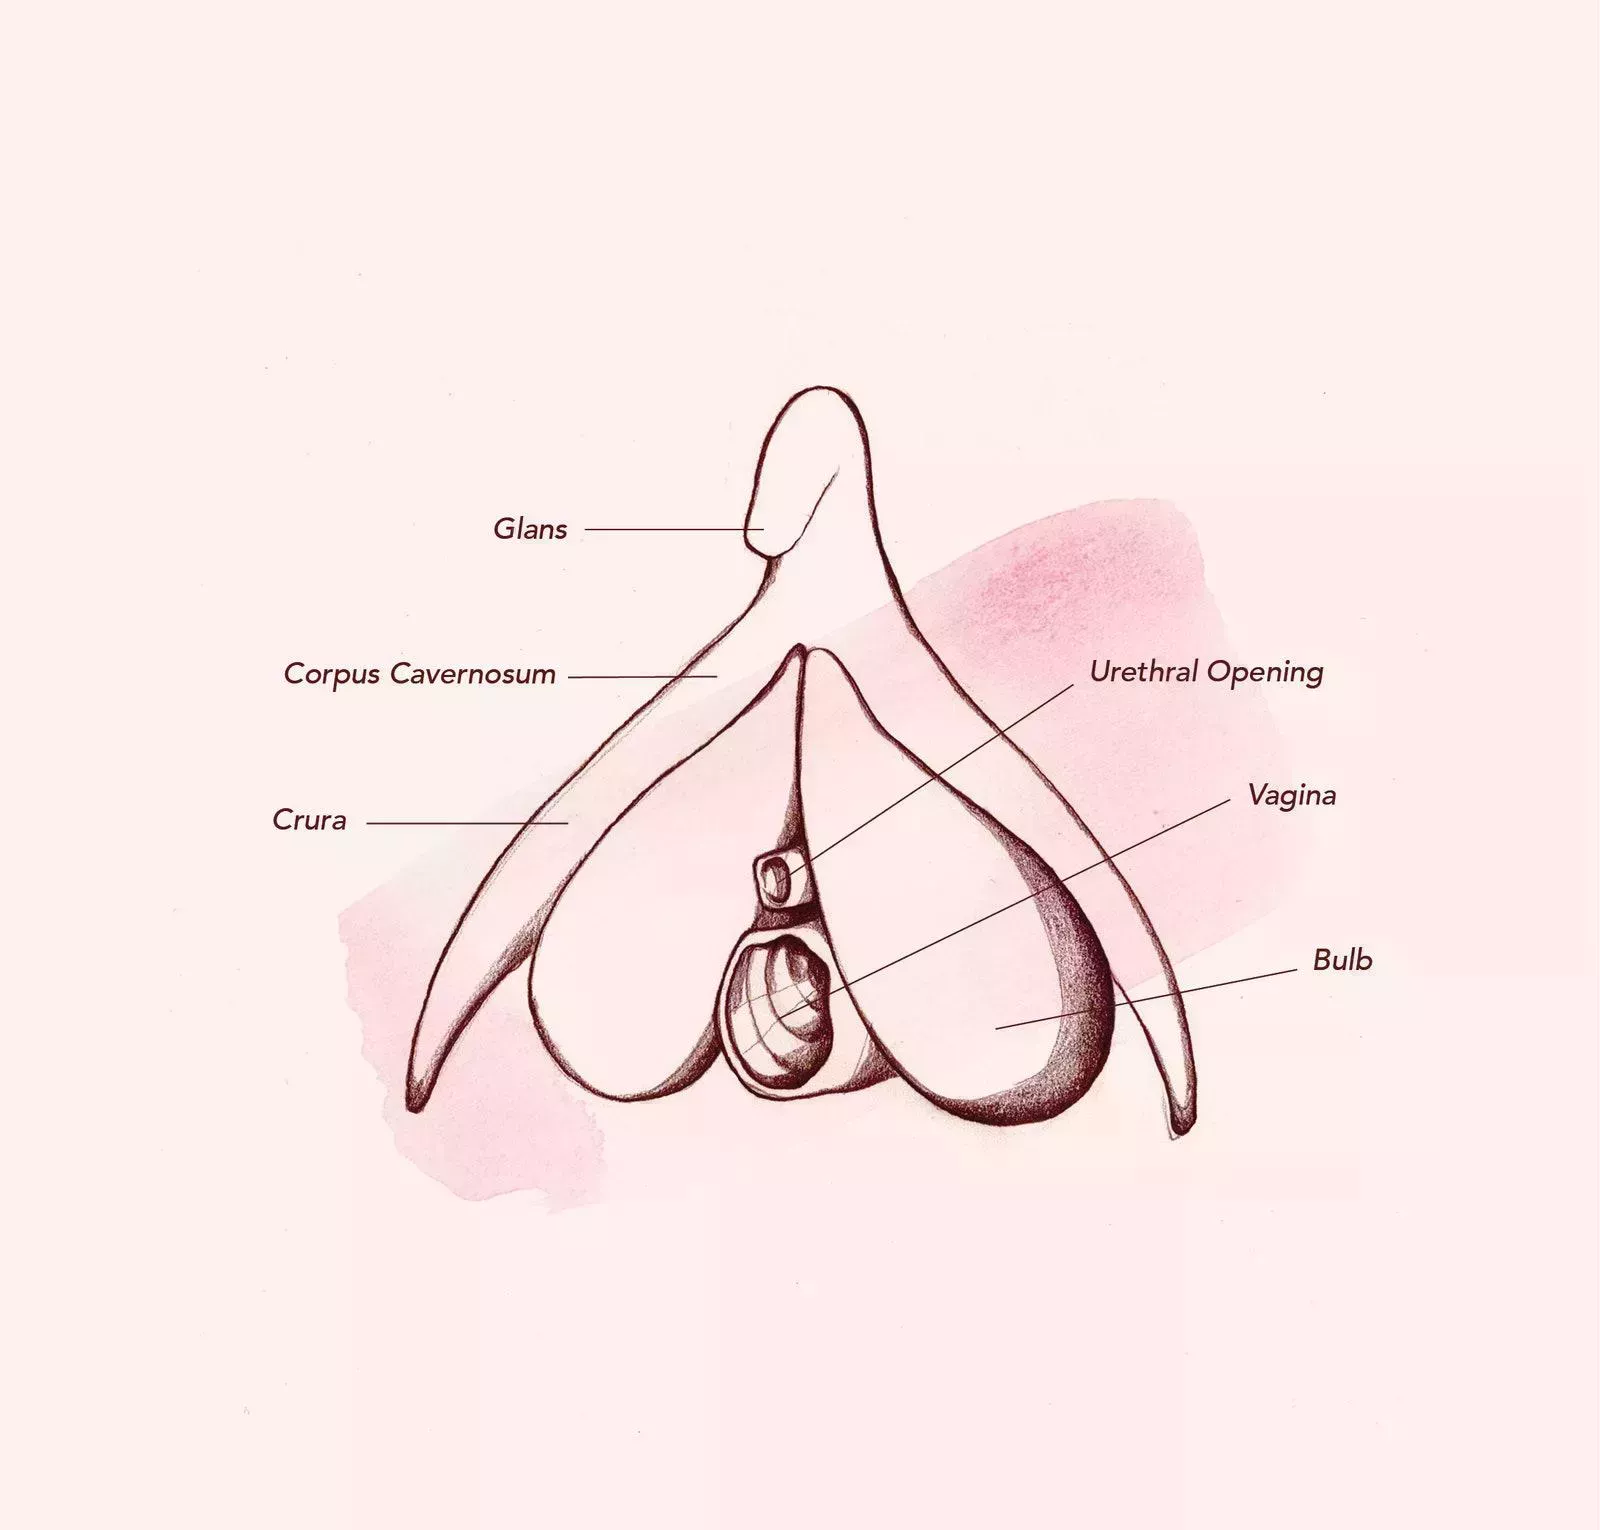 Vag-atomy 101: Todo lo que necesita saber sobre la vagina (y algo más)